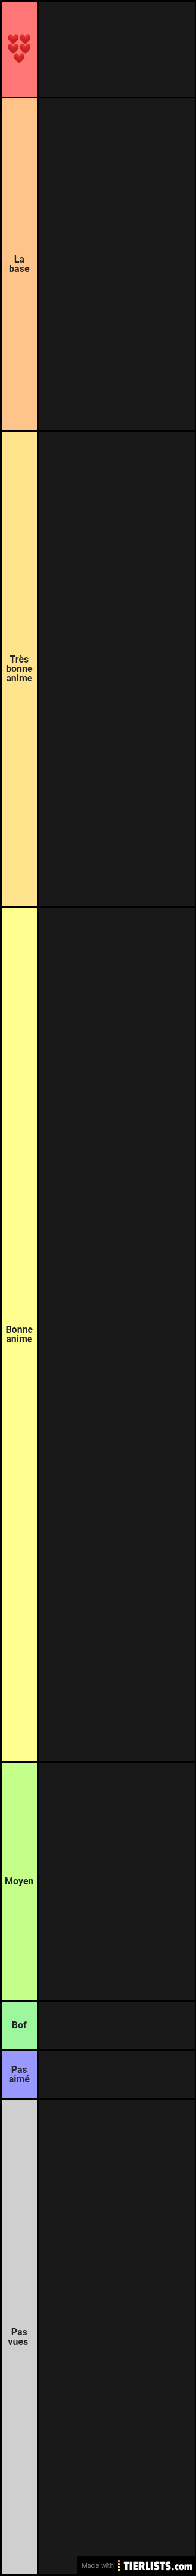 Tier list anime